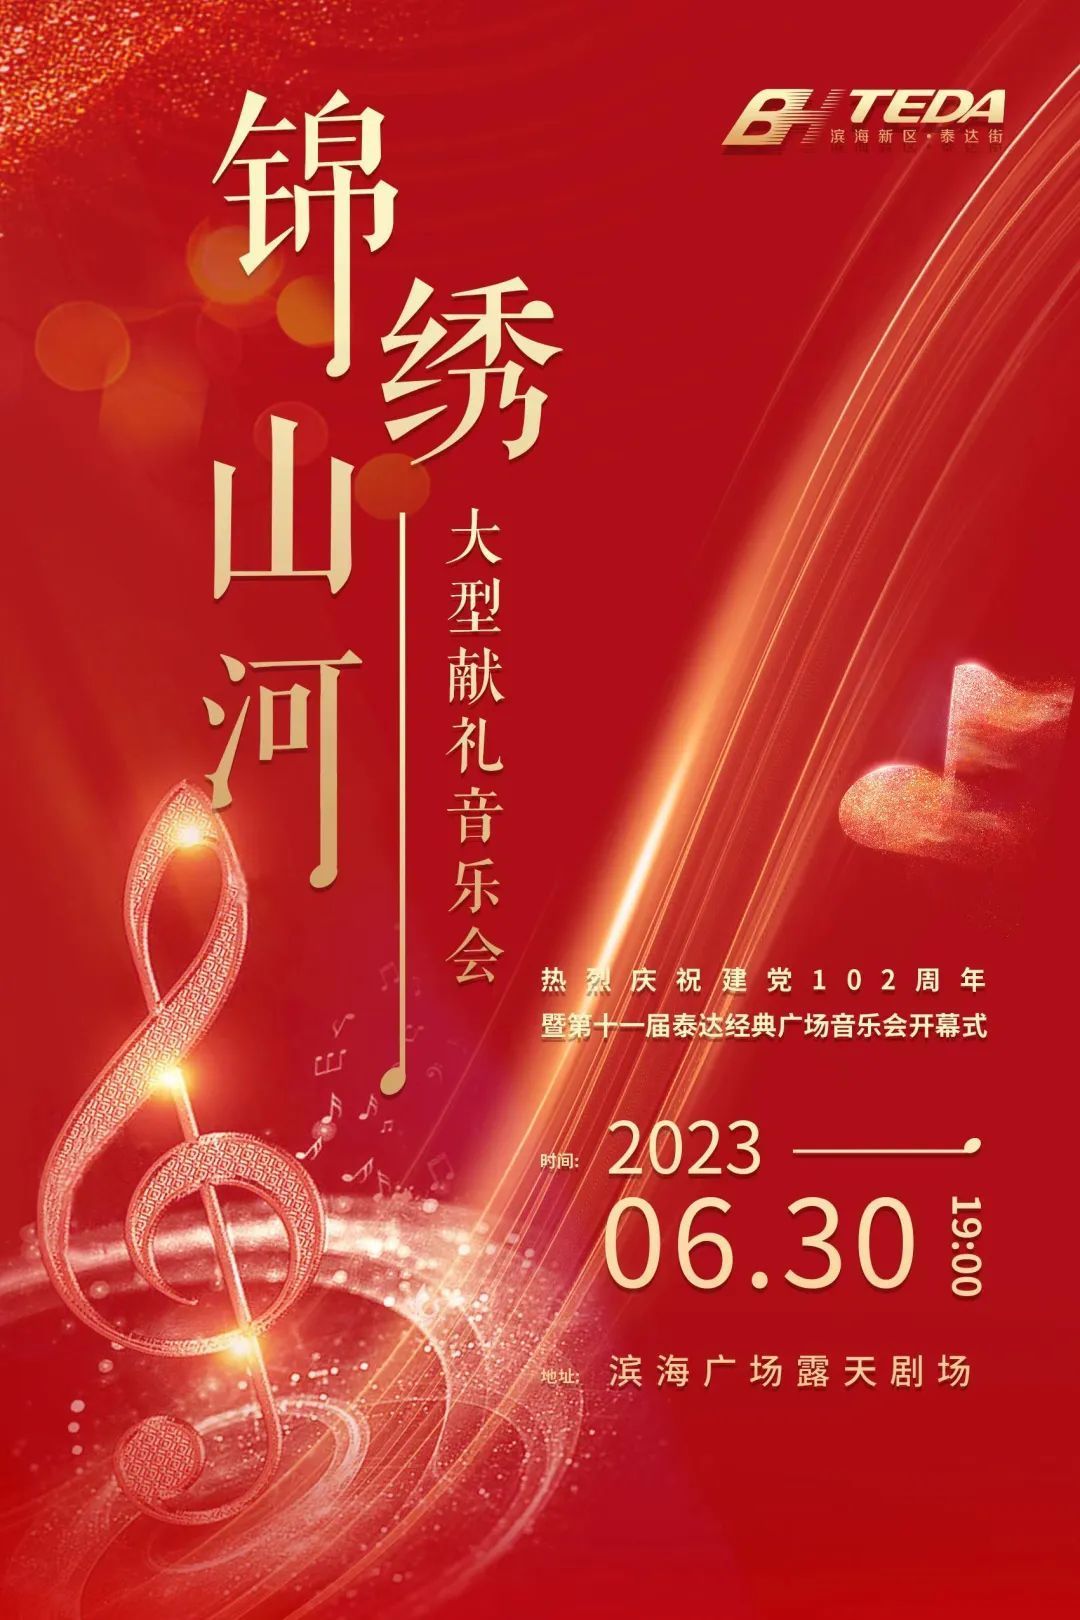 泰达献礼建党102周年 “锦绣山河”音乐会即将开幕！